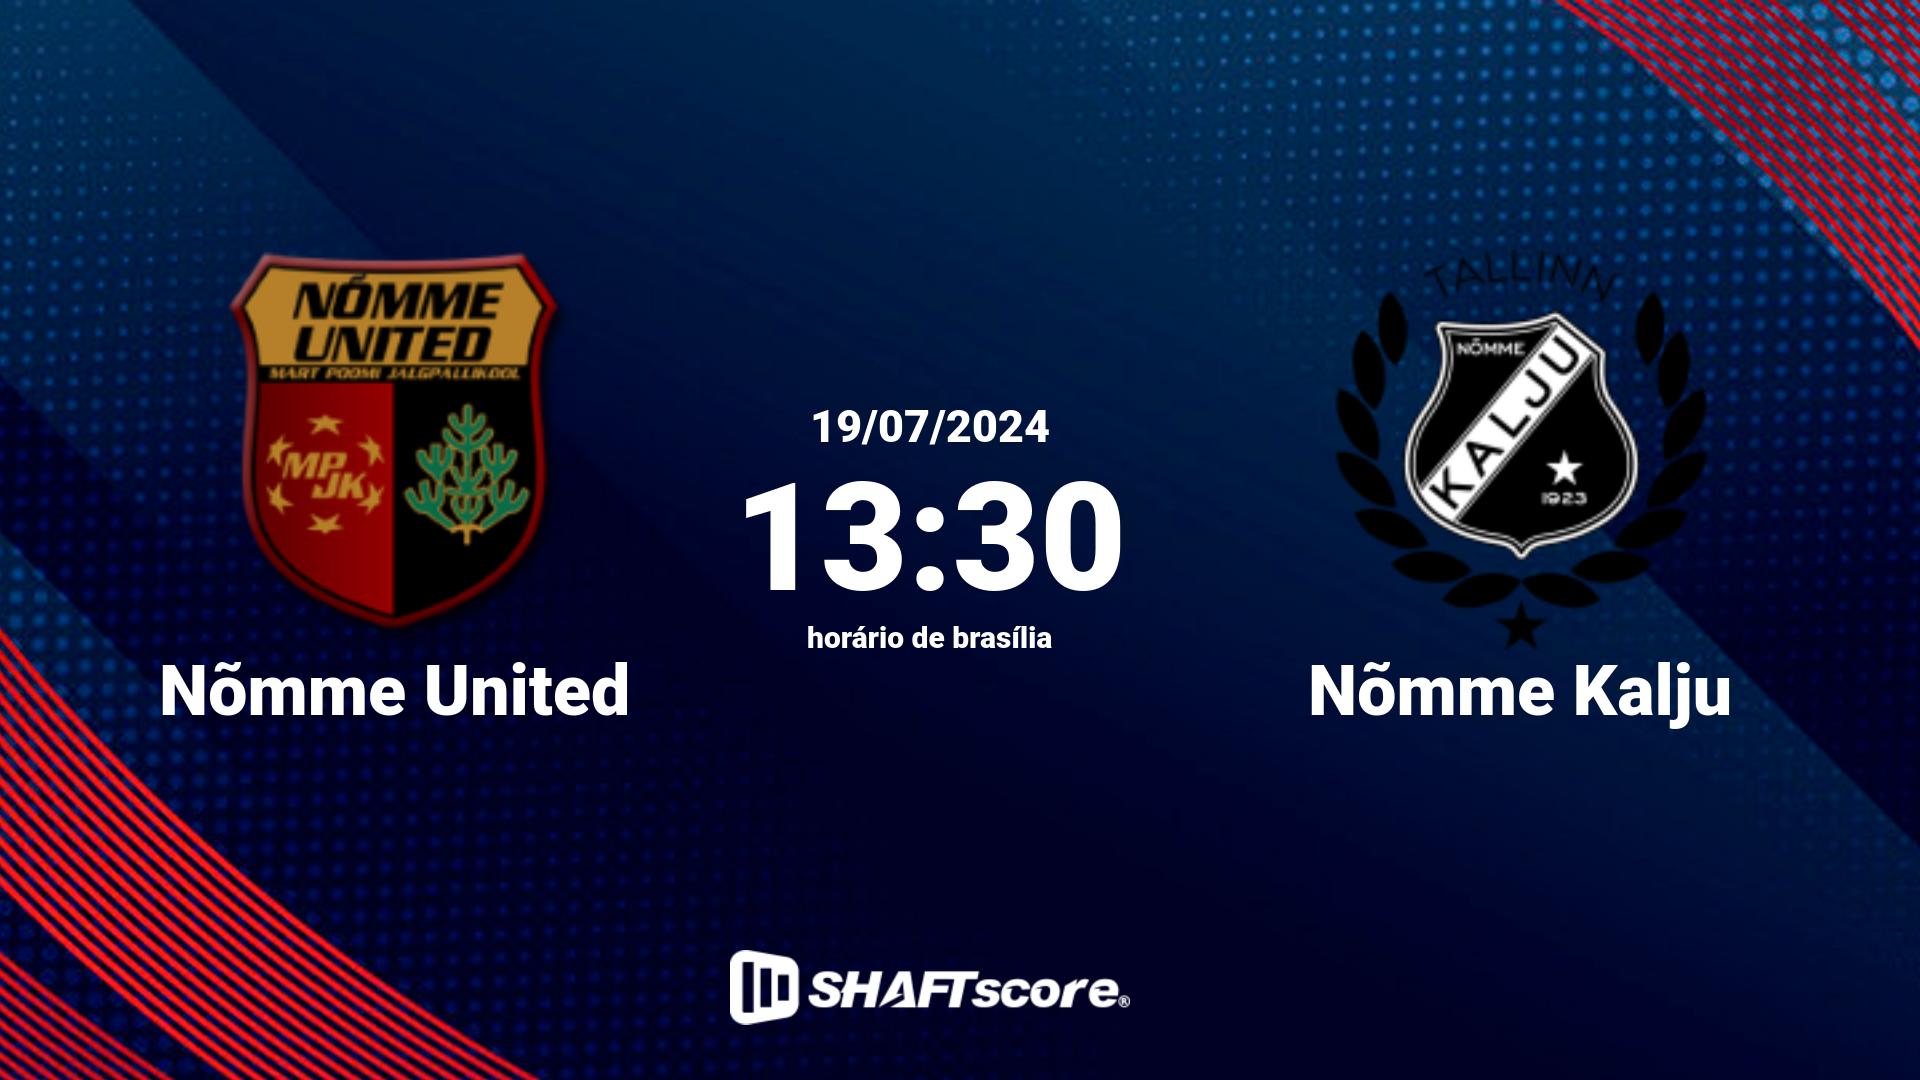 Estatísticas do jogo Nõmme United vs Nõmme Kalju 19.07 13:30